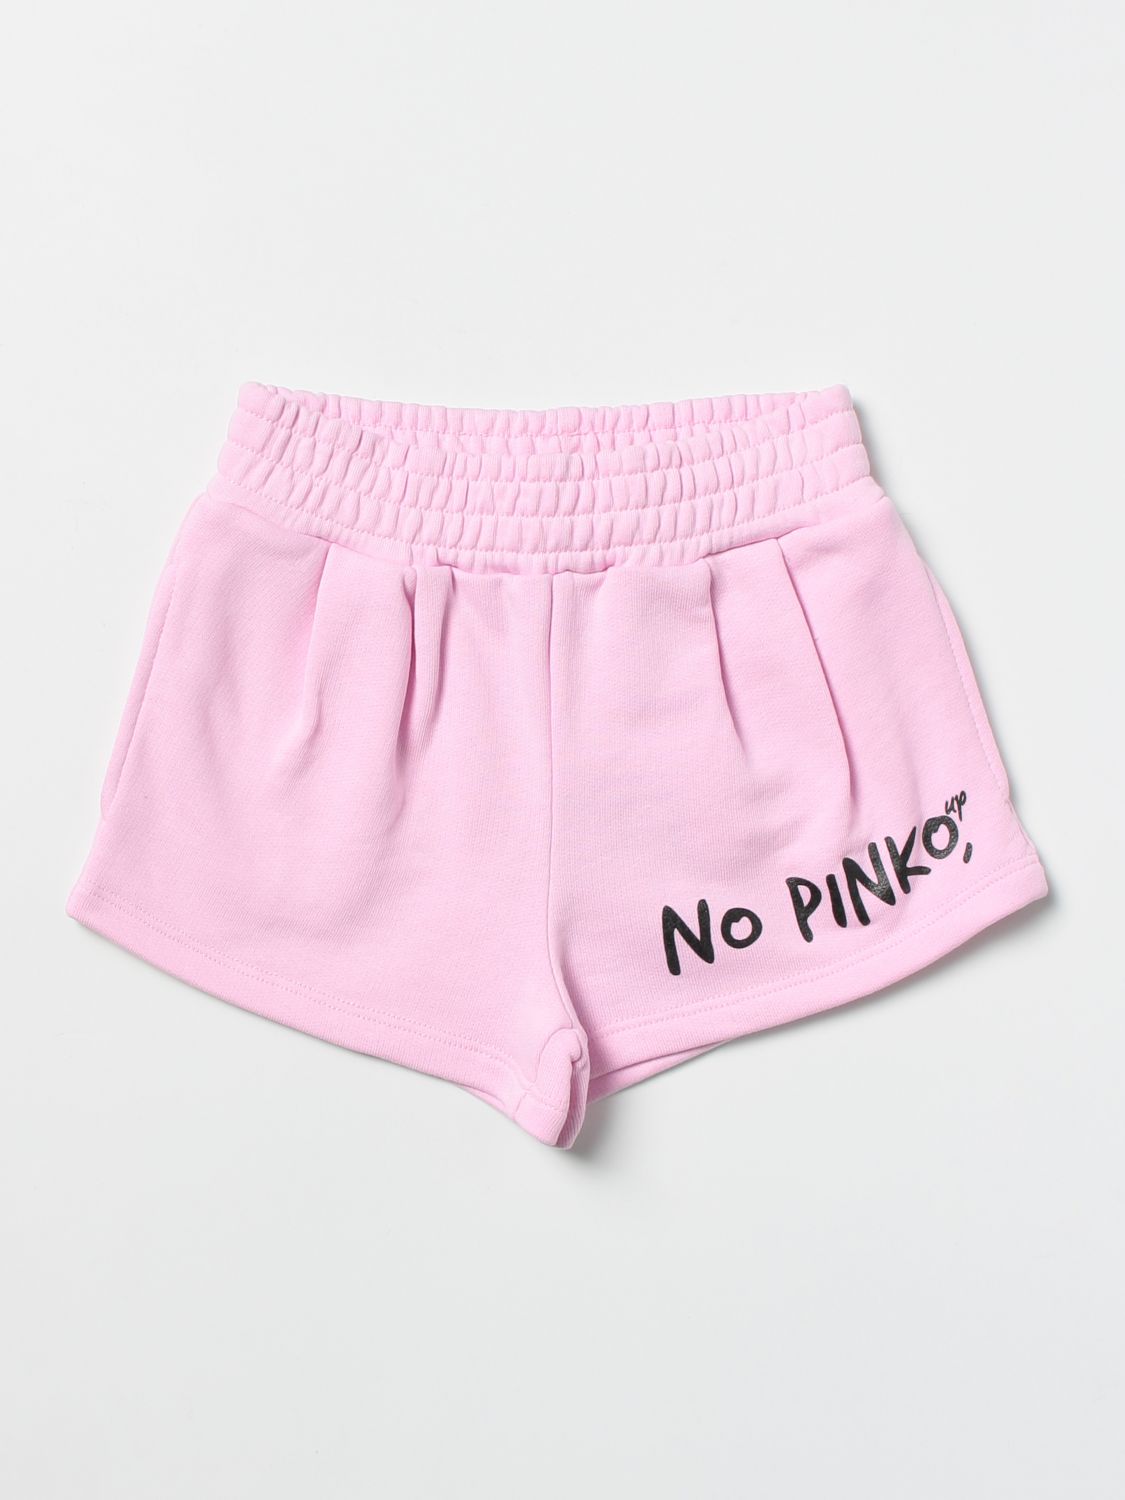 ショートパンツ ピンコ: ショートパンツ Pinko 女の子 ピンク 1